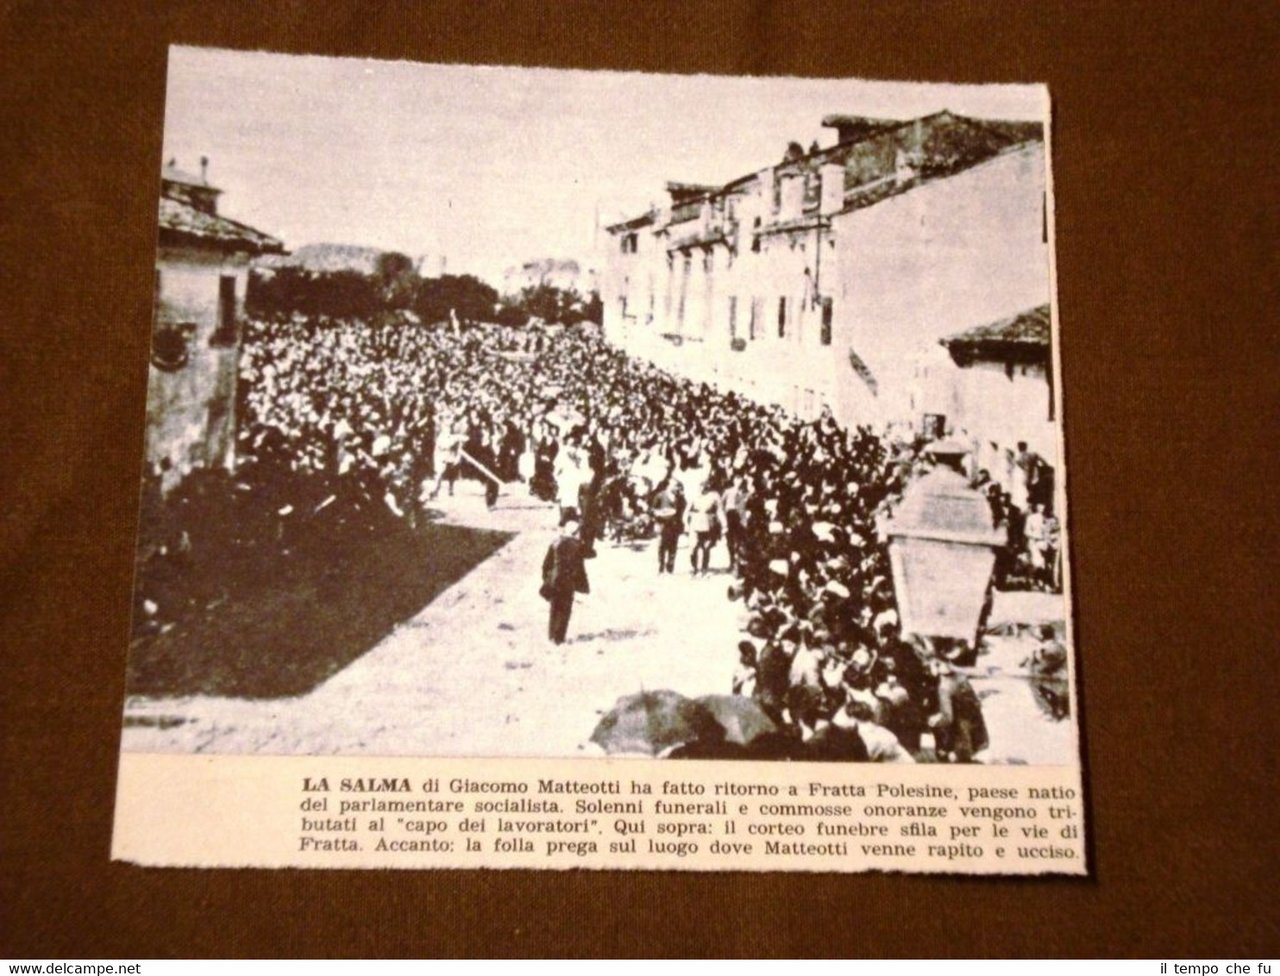 Il Fascismo in Italia Funerale di Giacomo Matteotti a Fratta …